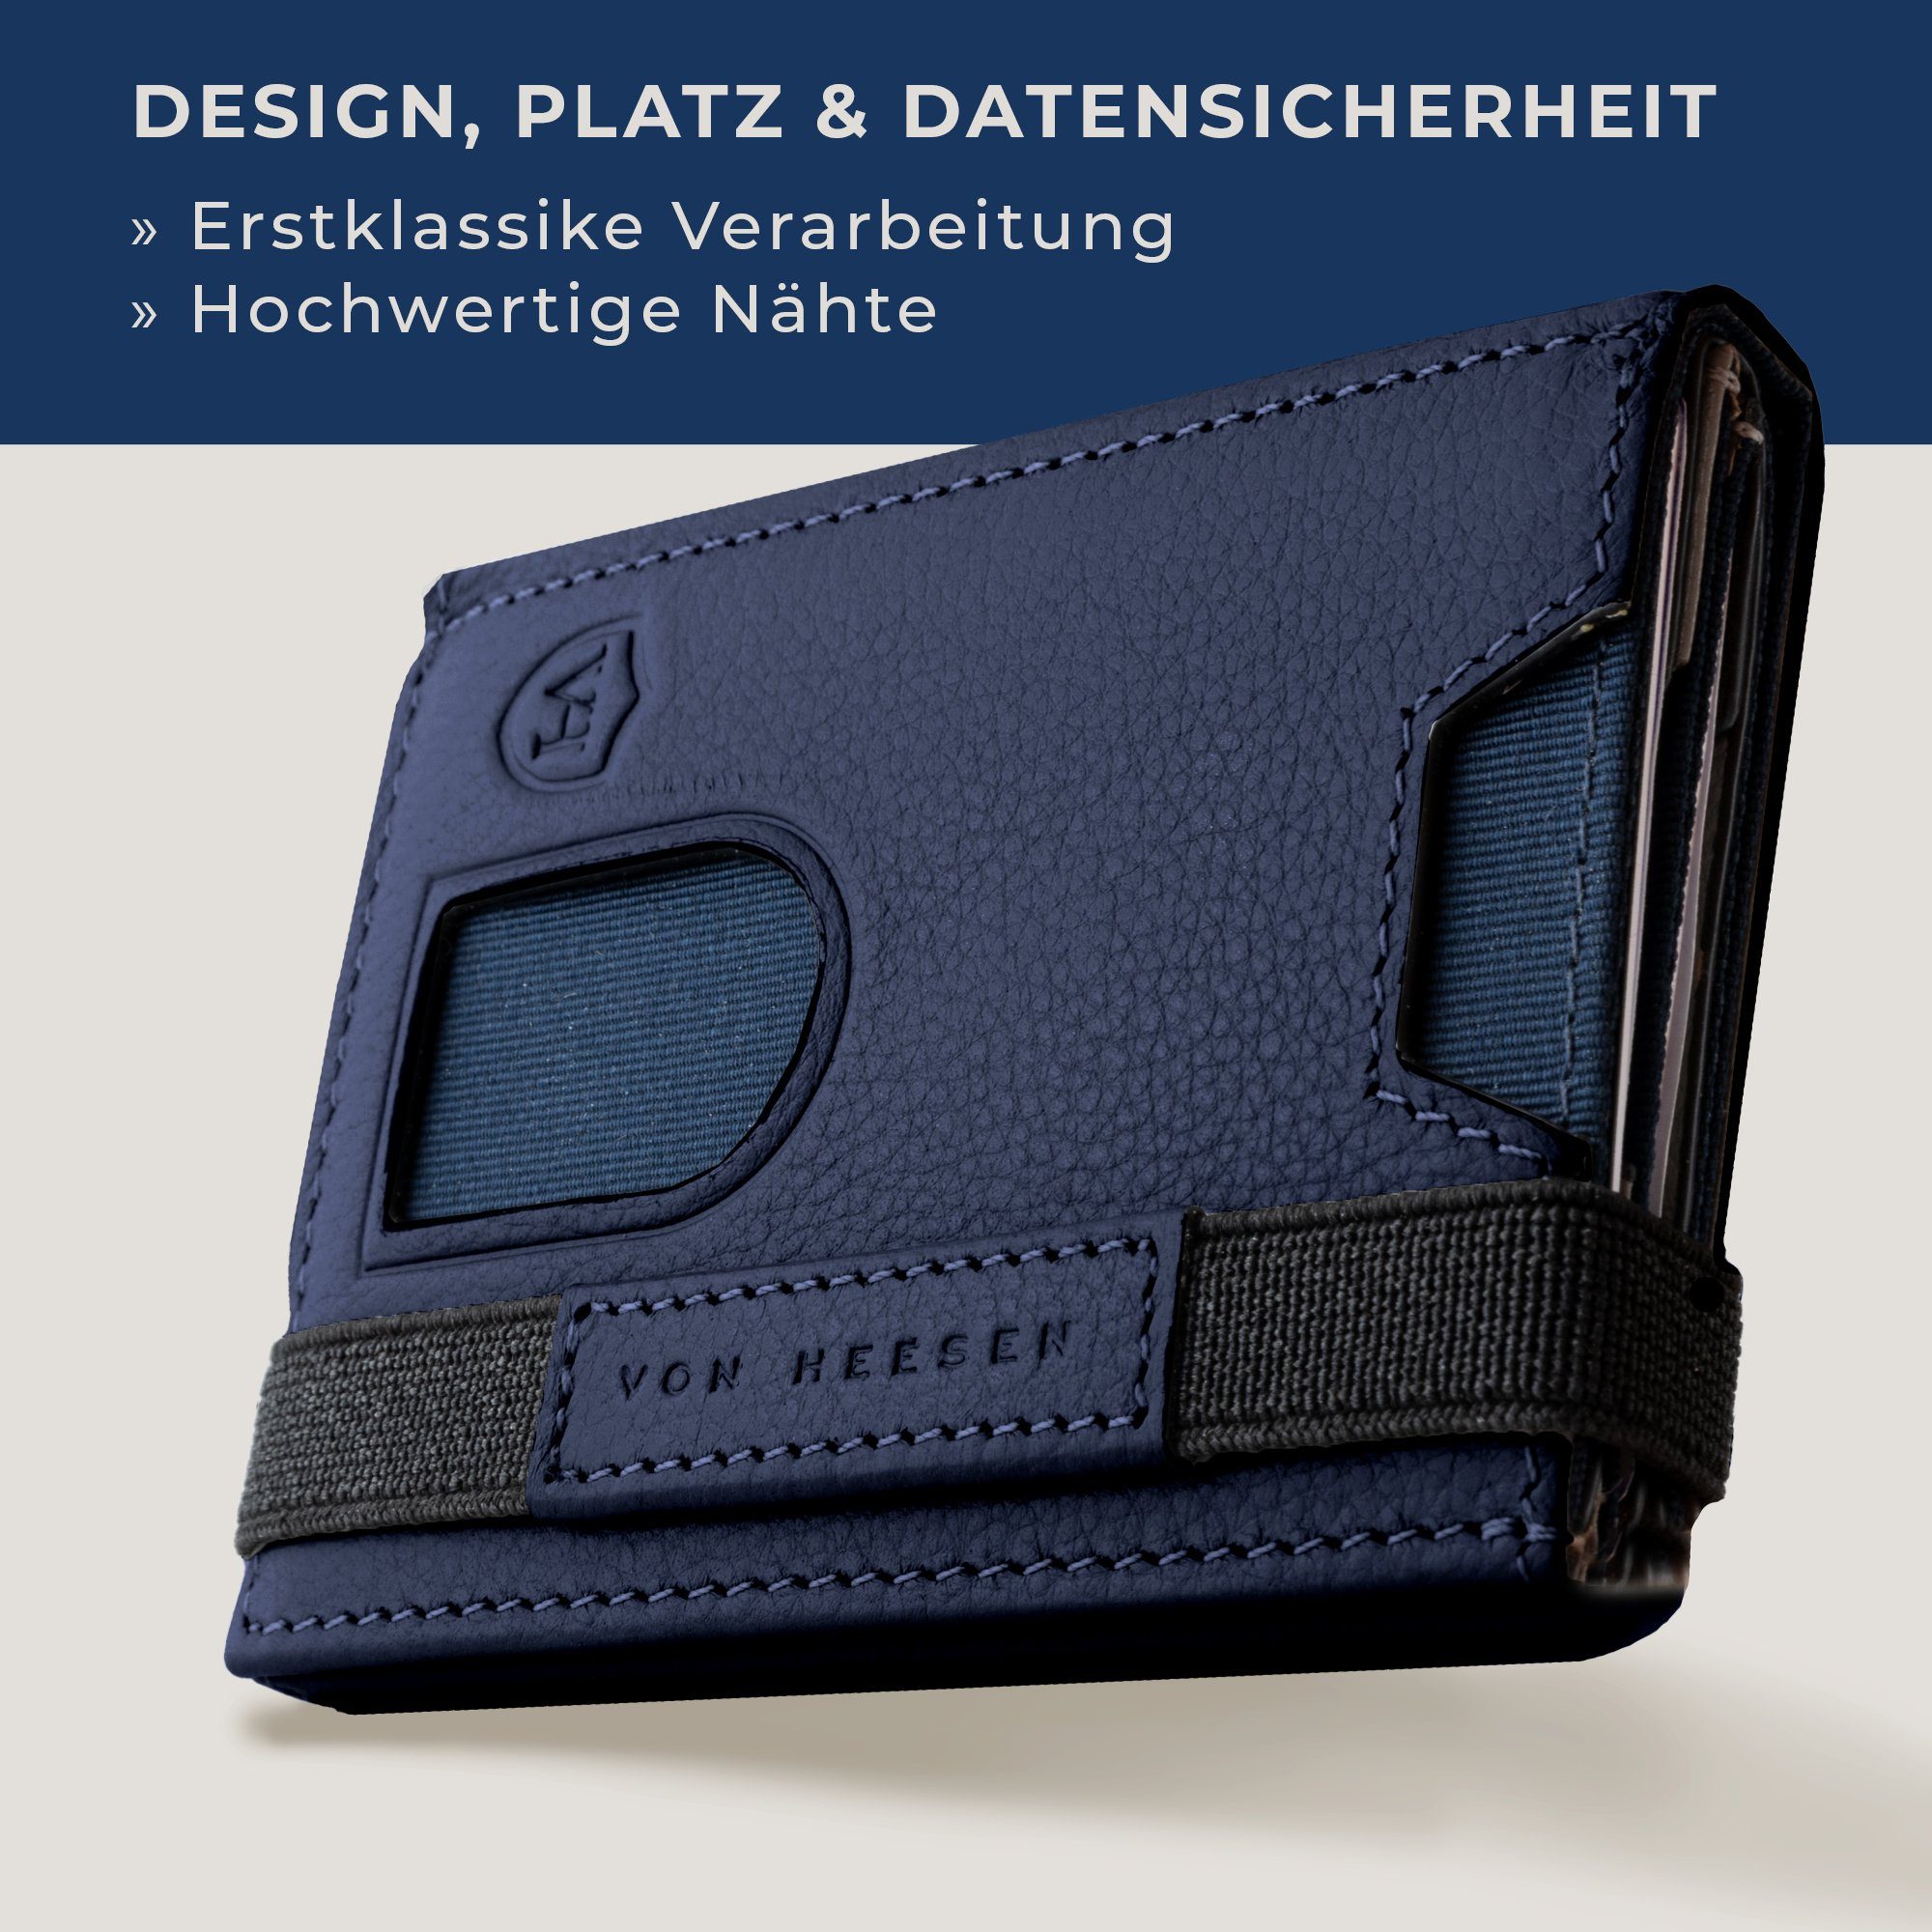 VON HEESEN Geldbörse Whizz Wallet Geschenkbox Wallet mit 5 Blau & RFID-Schutz inkl. Portemonnaie Geldbeutel Slim Mini-Münzfach, Kartenfächer &